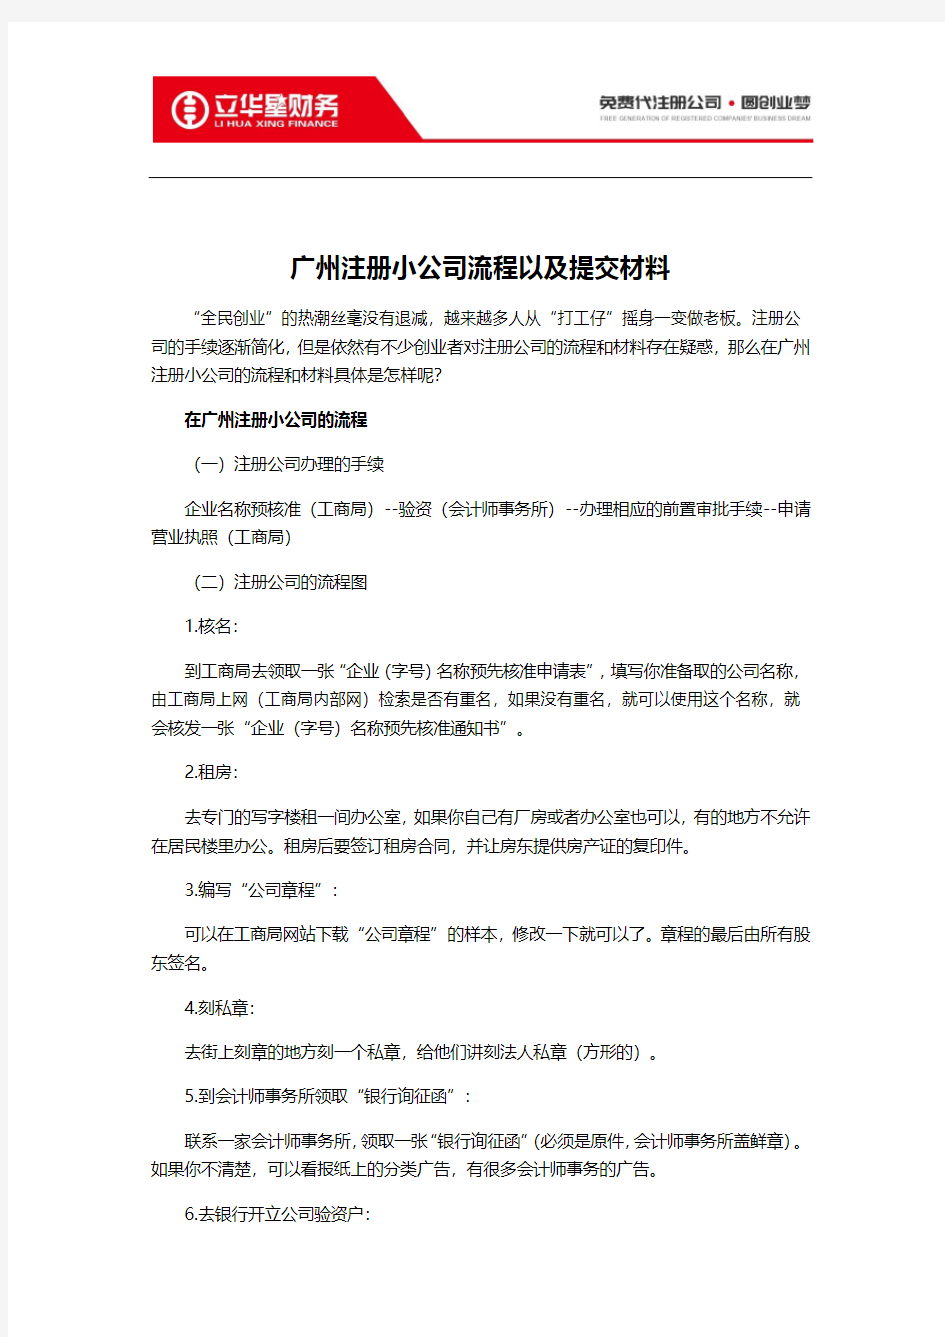 广州注册小公司流程以及提交材料